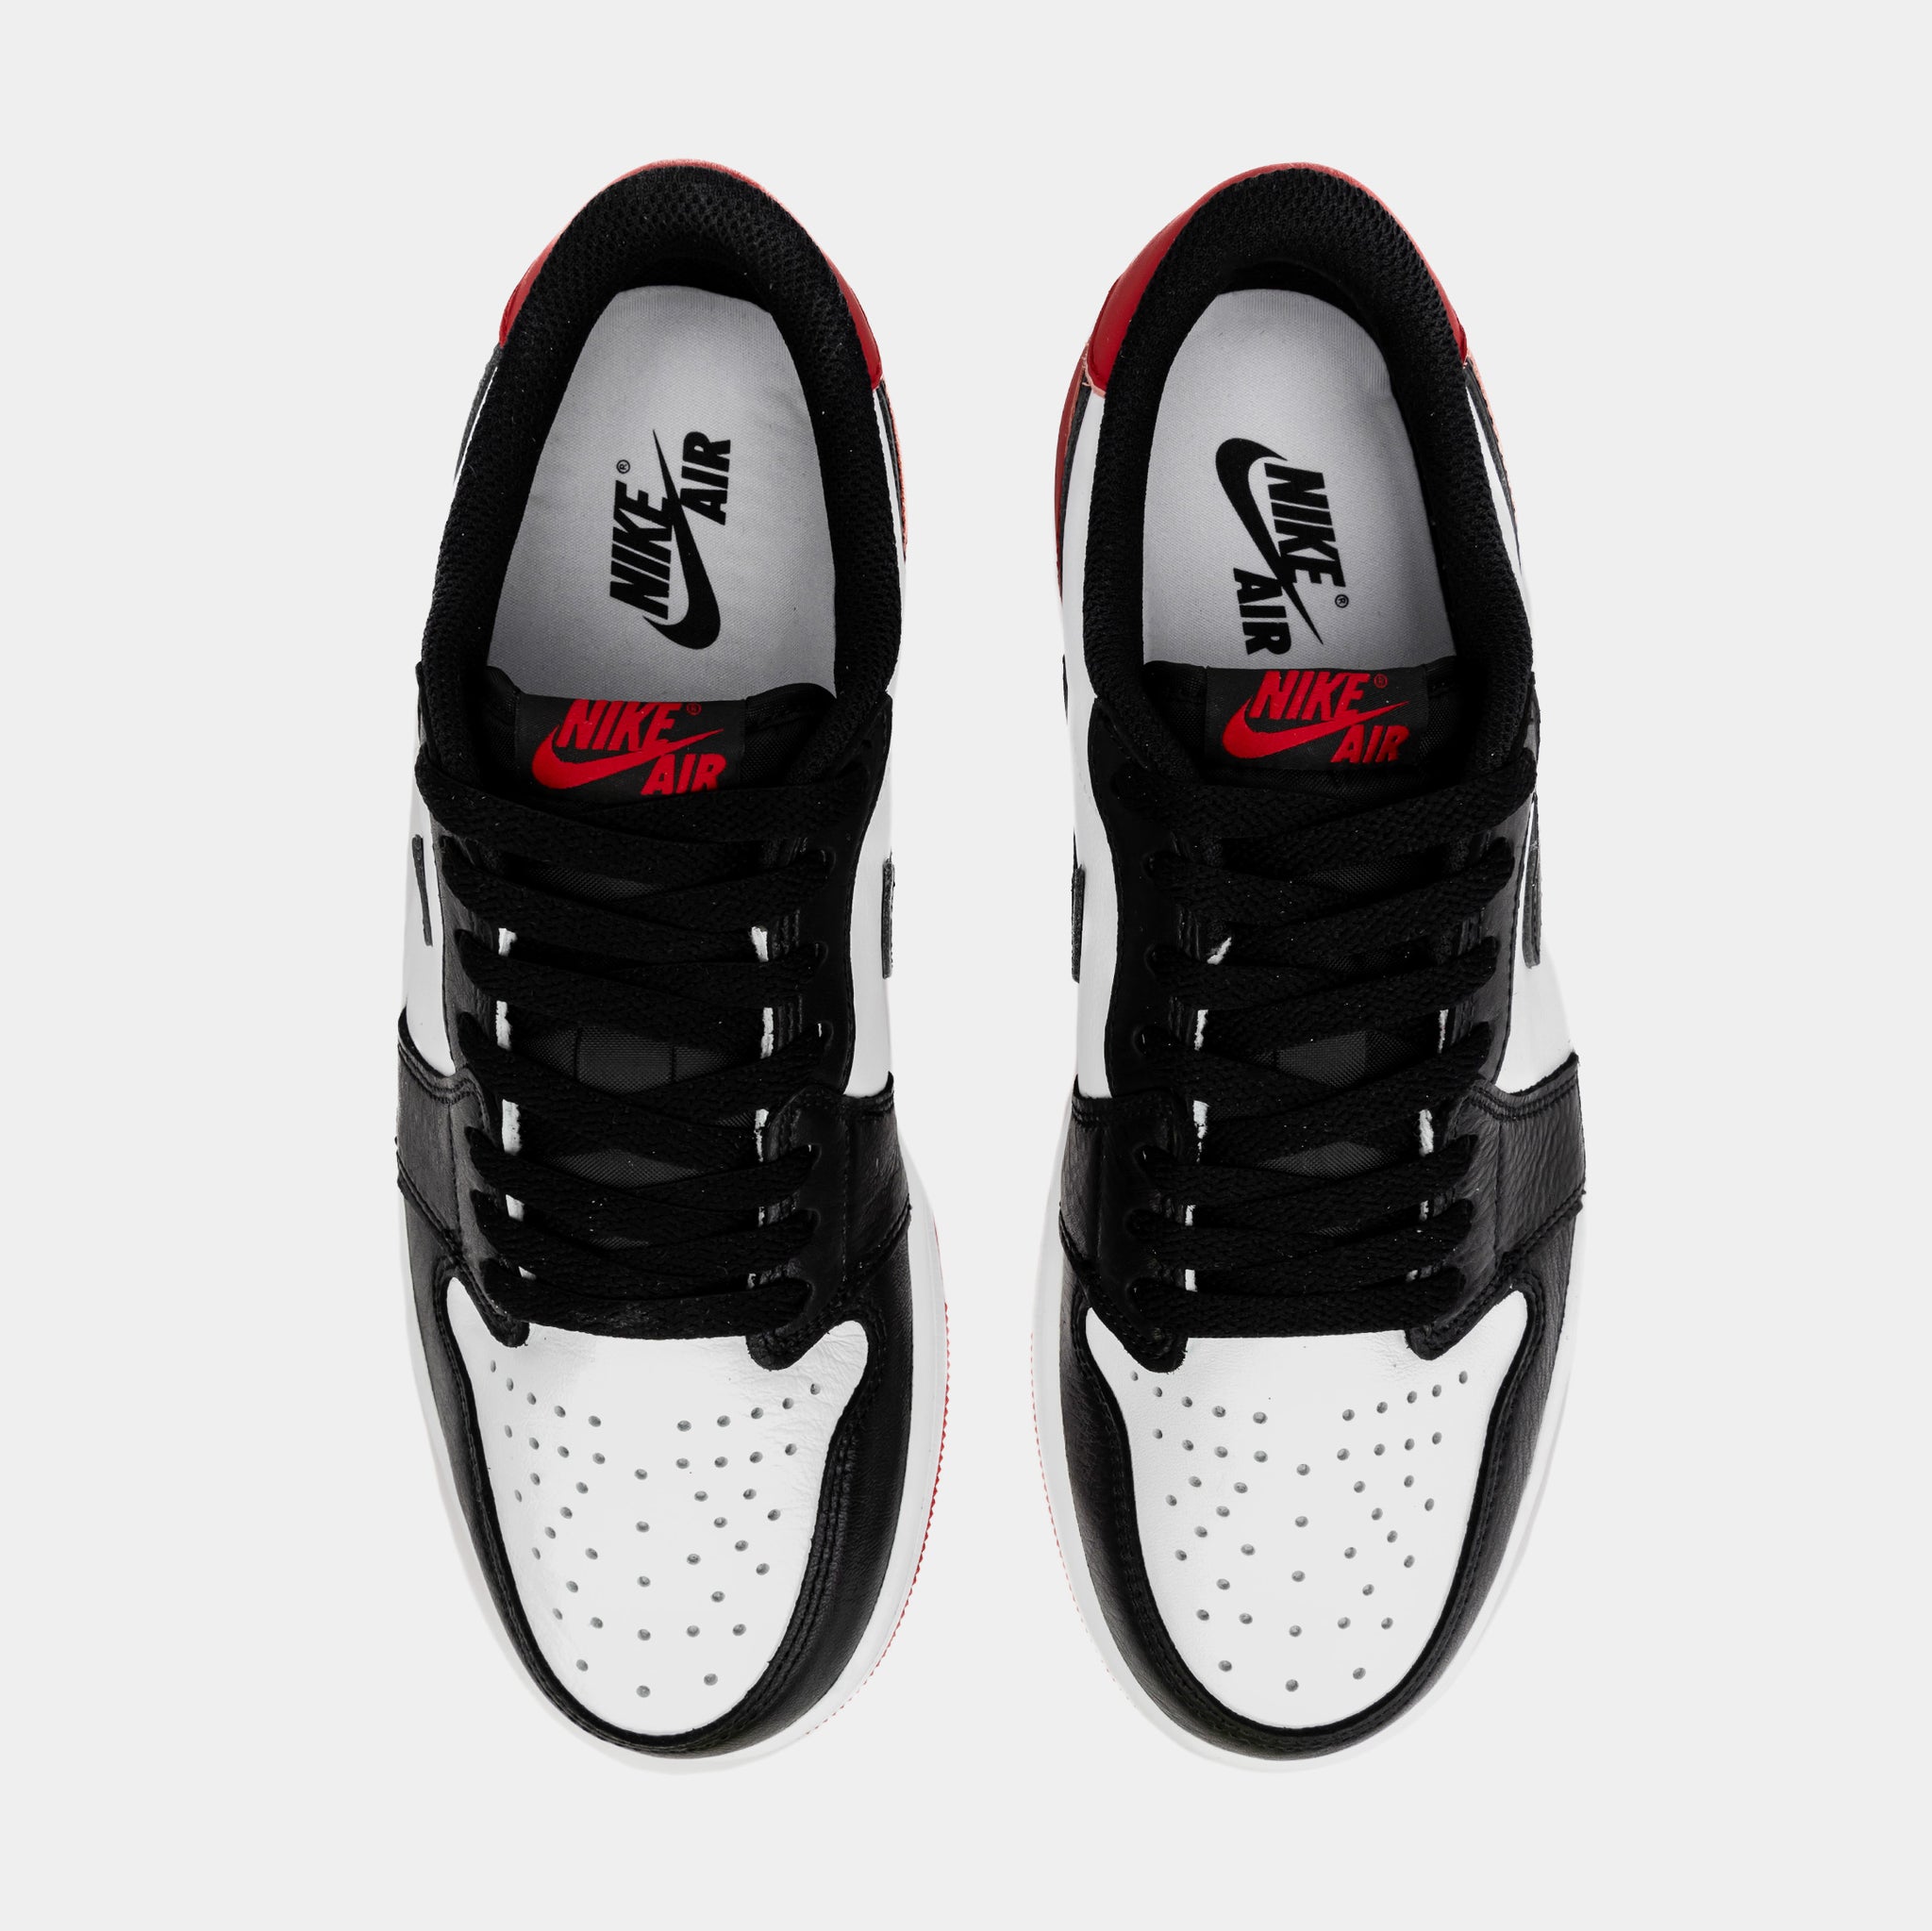 Air Jordan 1 Retro High OG Black Toe sneakers